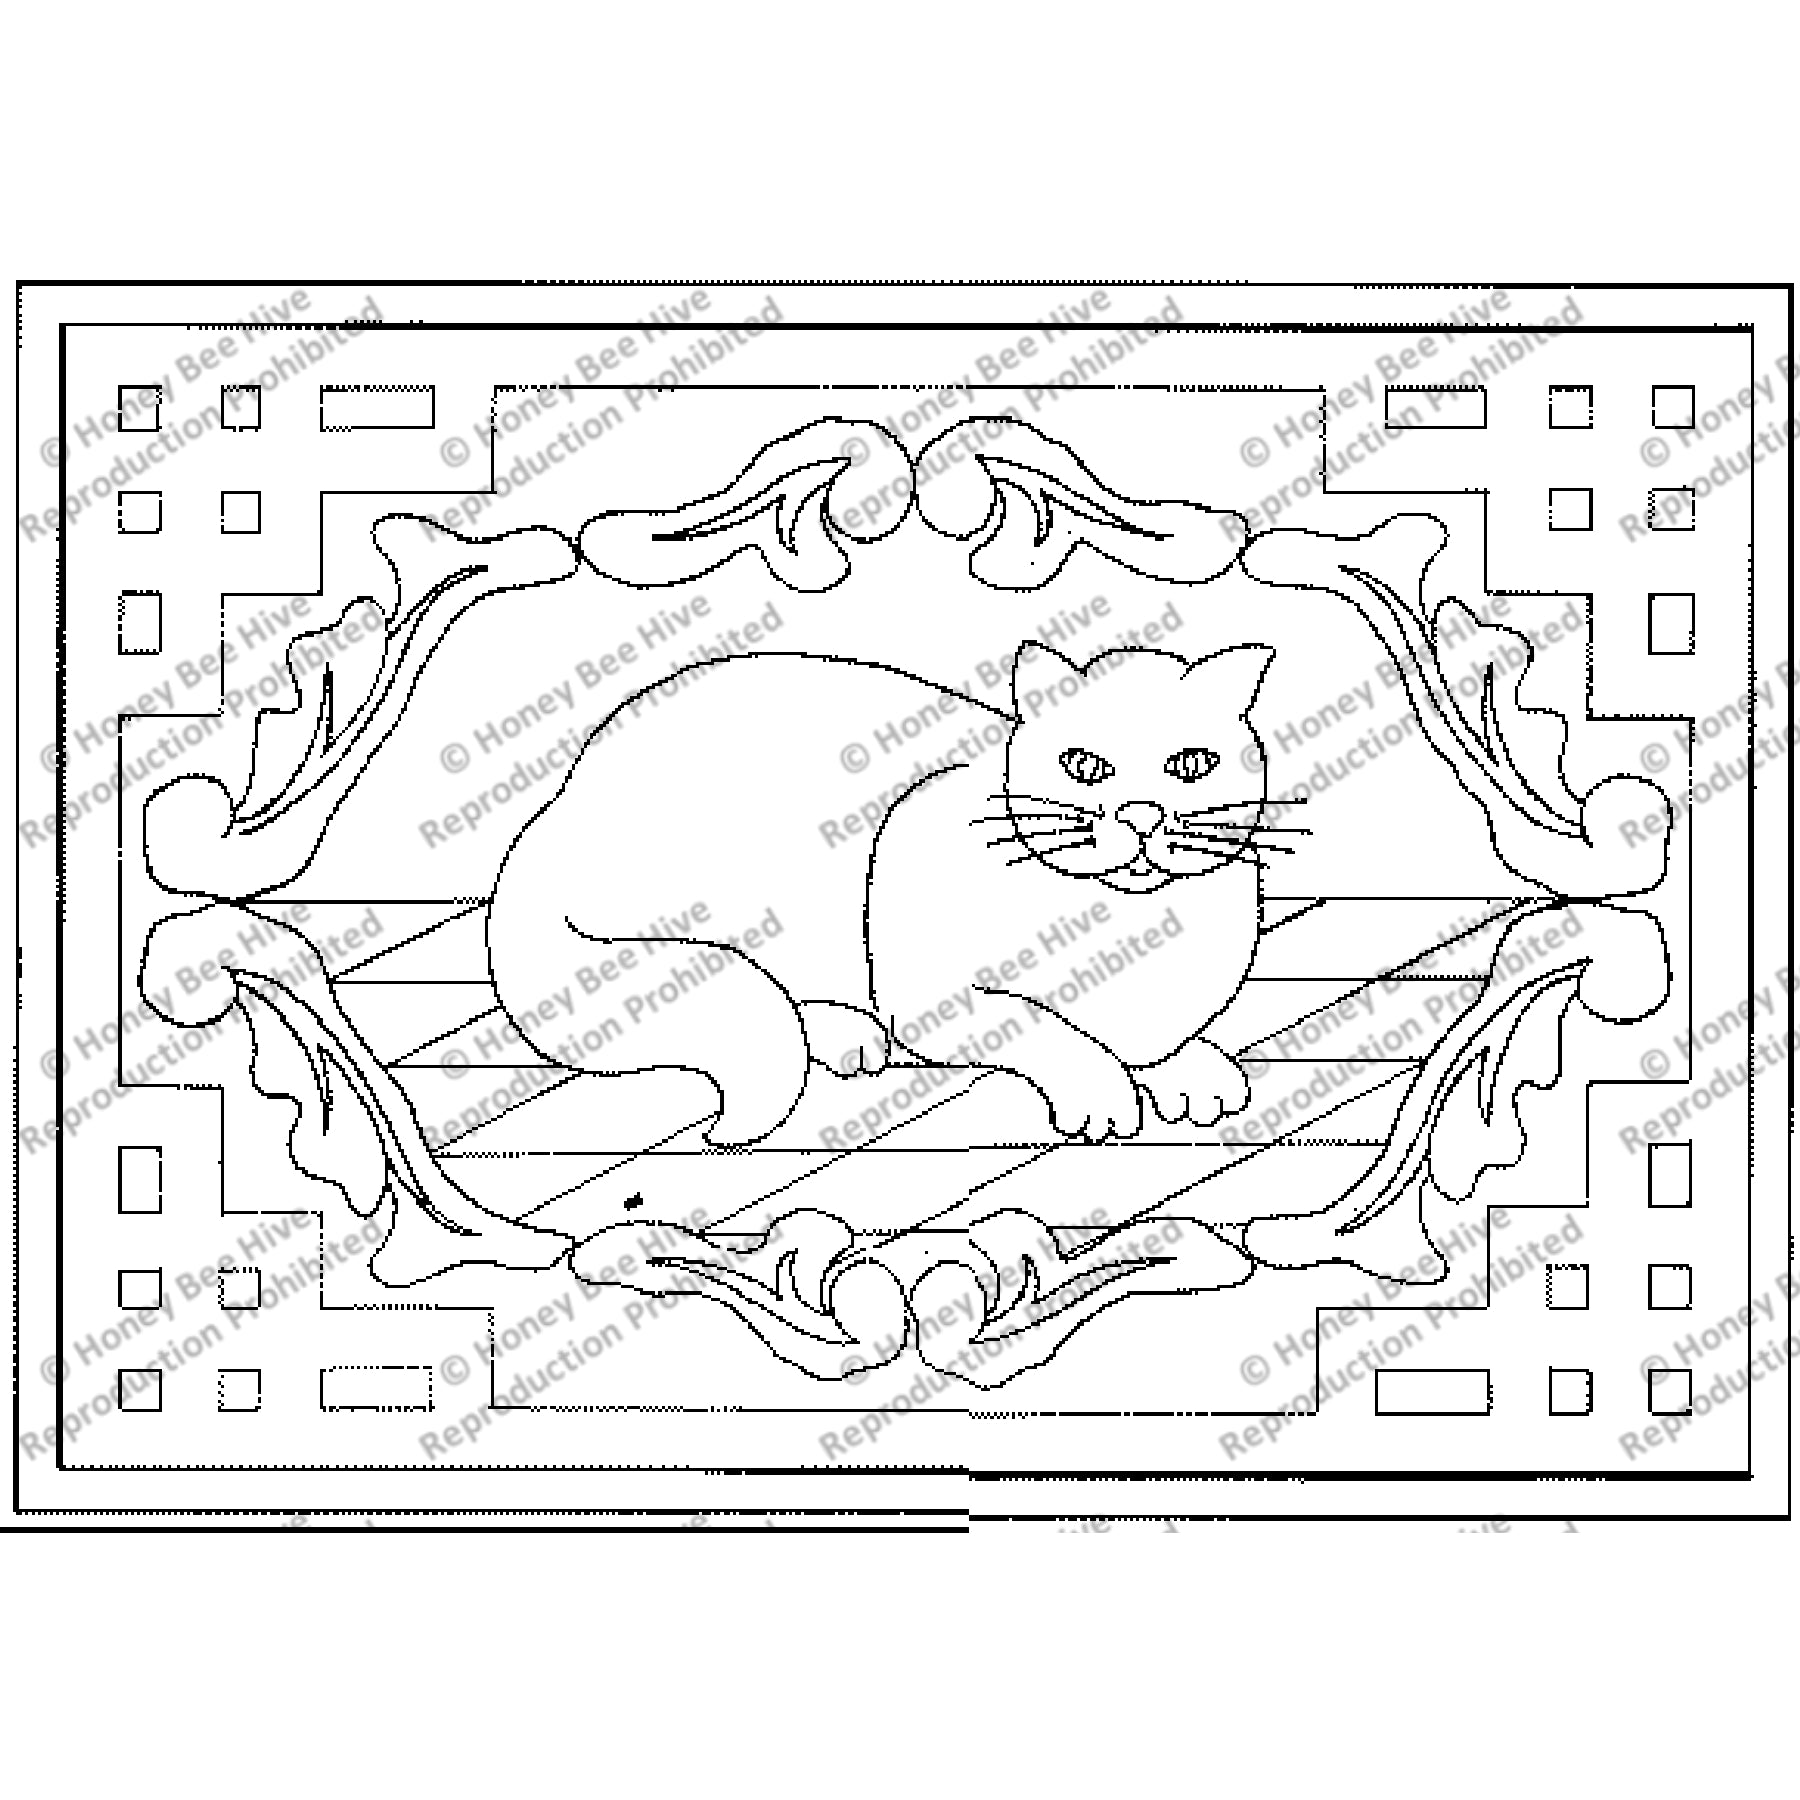 Fireside Cat, rug hooking pattern